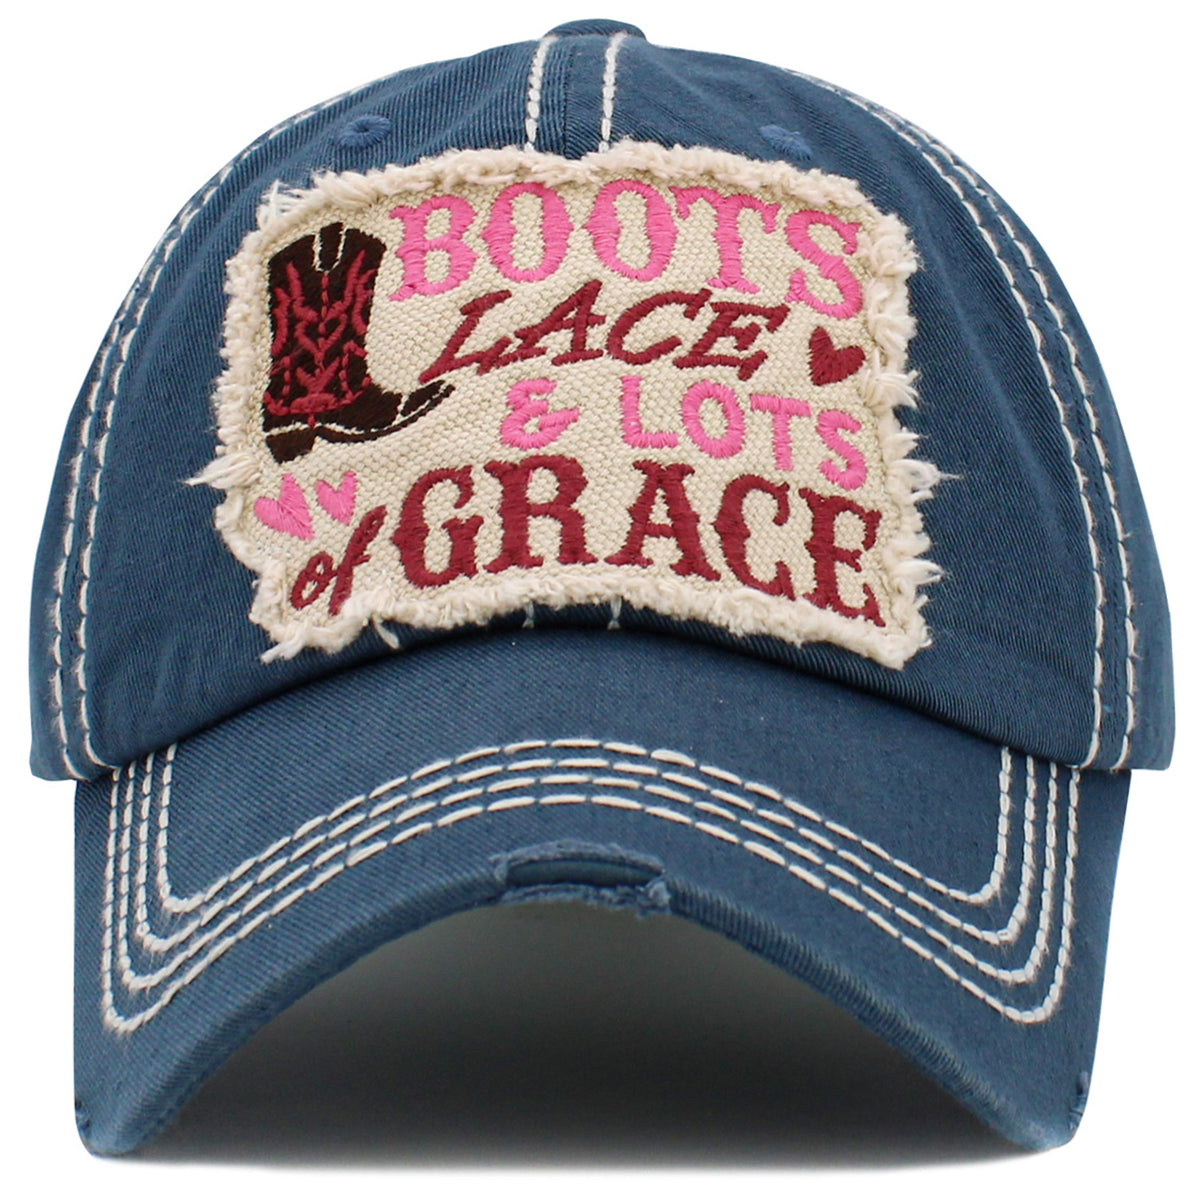 1491 - Boots Lace & Lots of Grace Hat - Blue